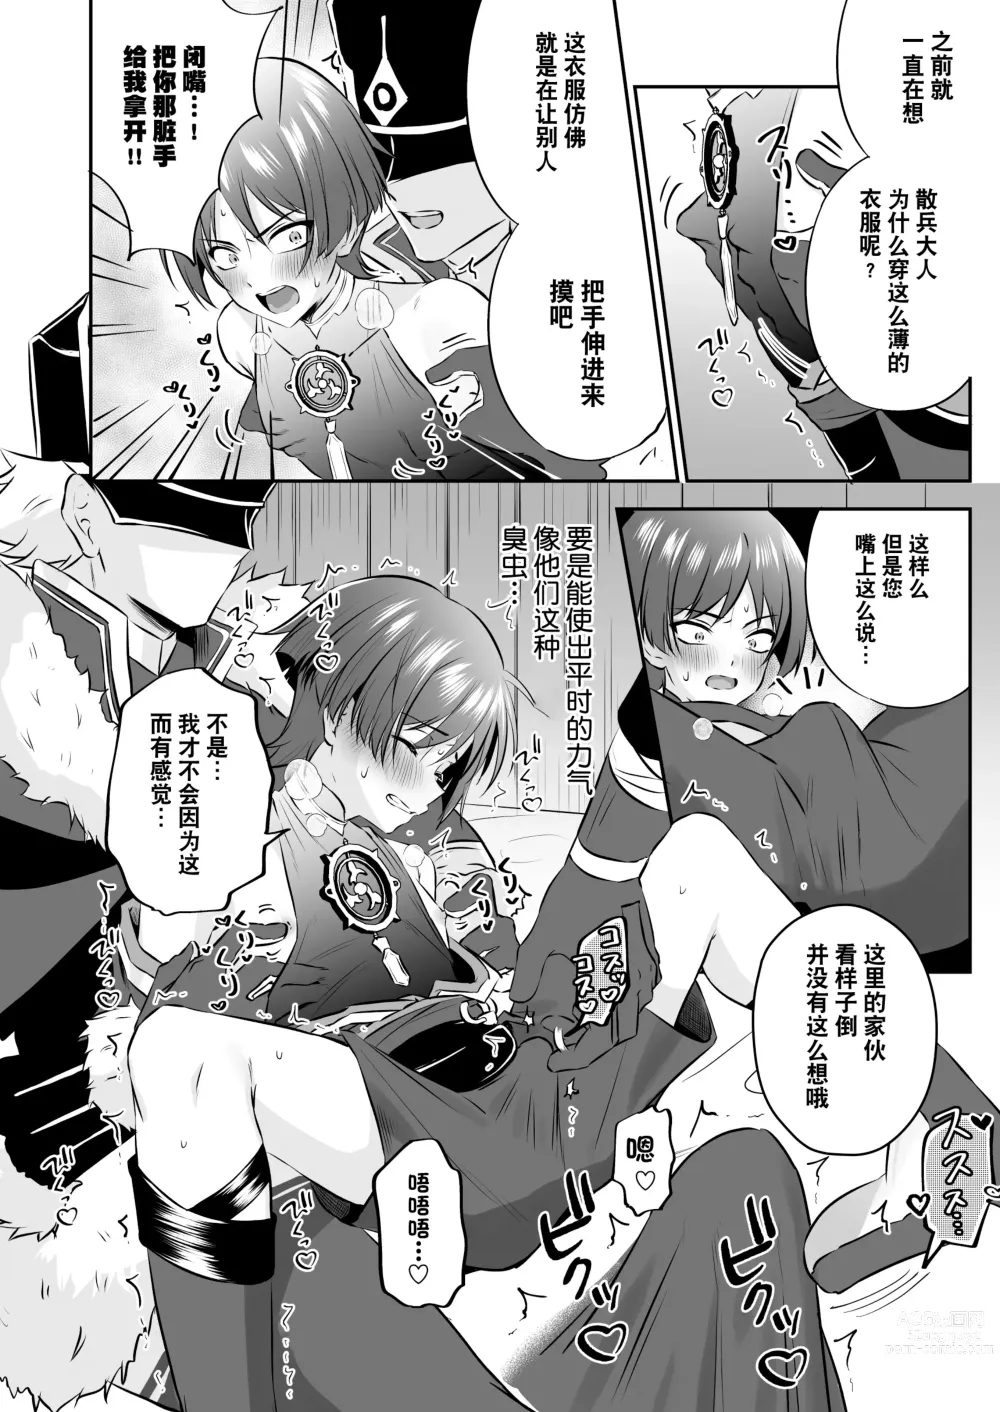 Page 15 of doujinshi  散兵大人哪怕是因为药物兴奋也不可能任由愚人众肆意摆布的吧